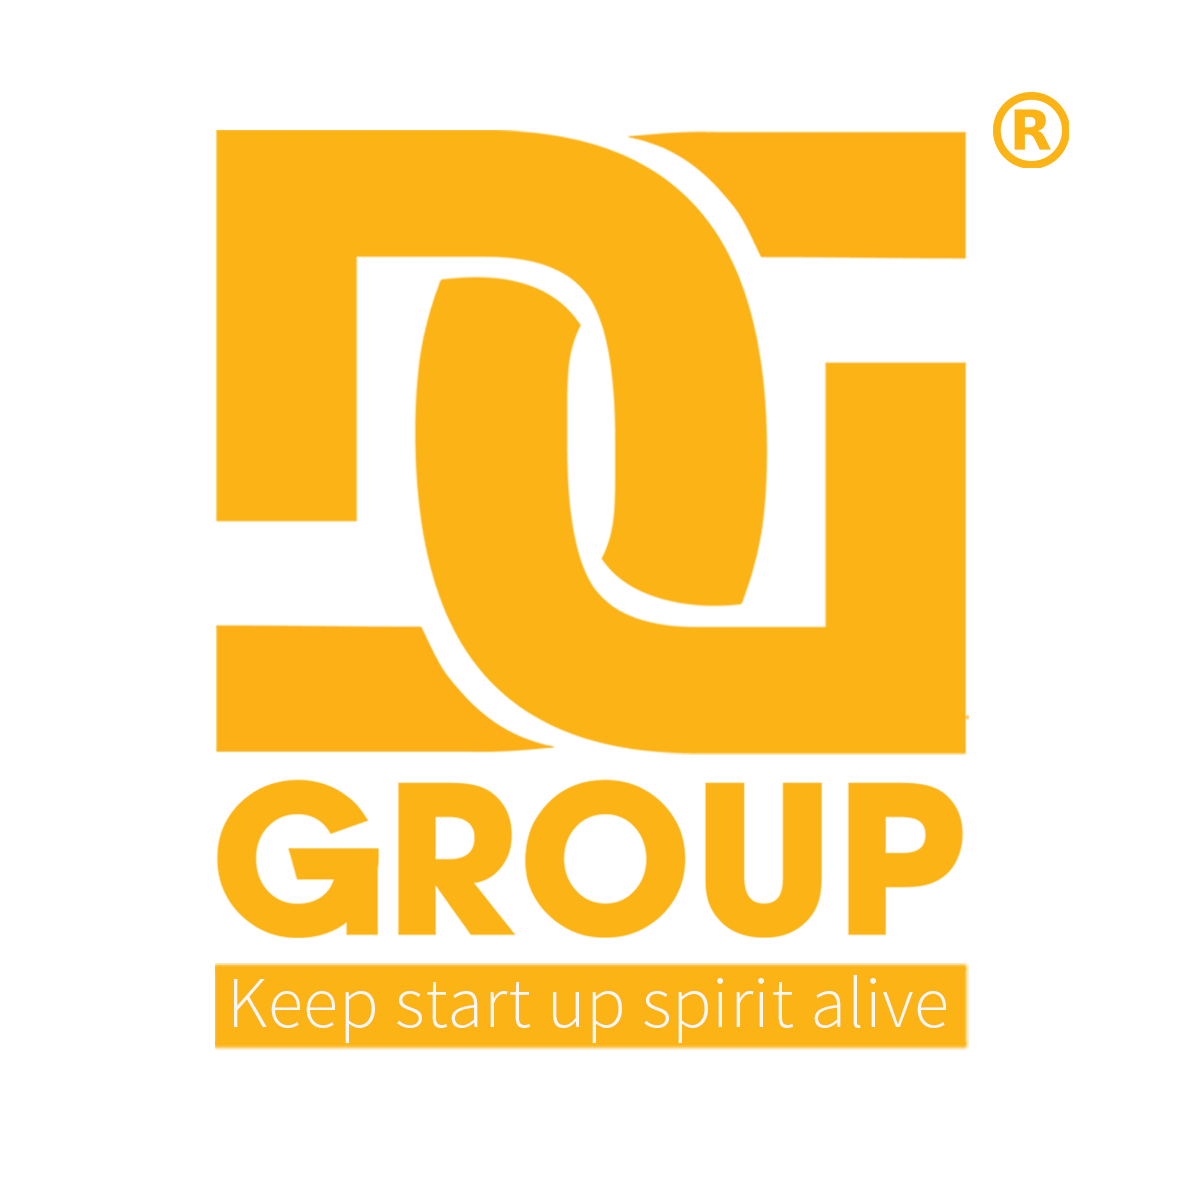 Giải đấu FC DGroup Holdings kỷ niệm 8 năm thành lập tổng công ty